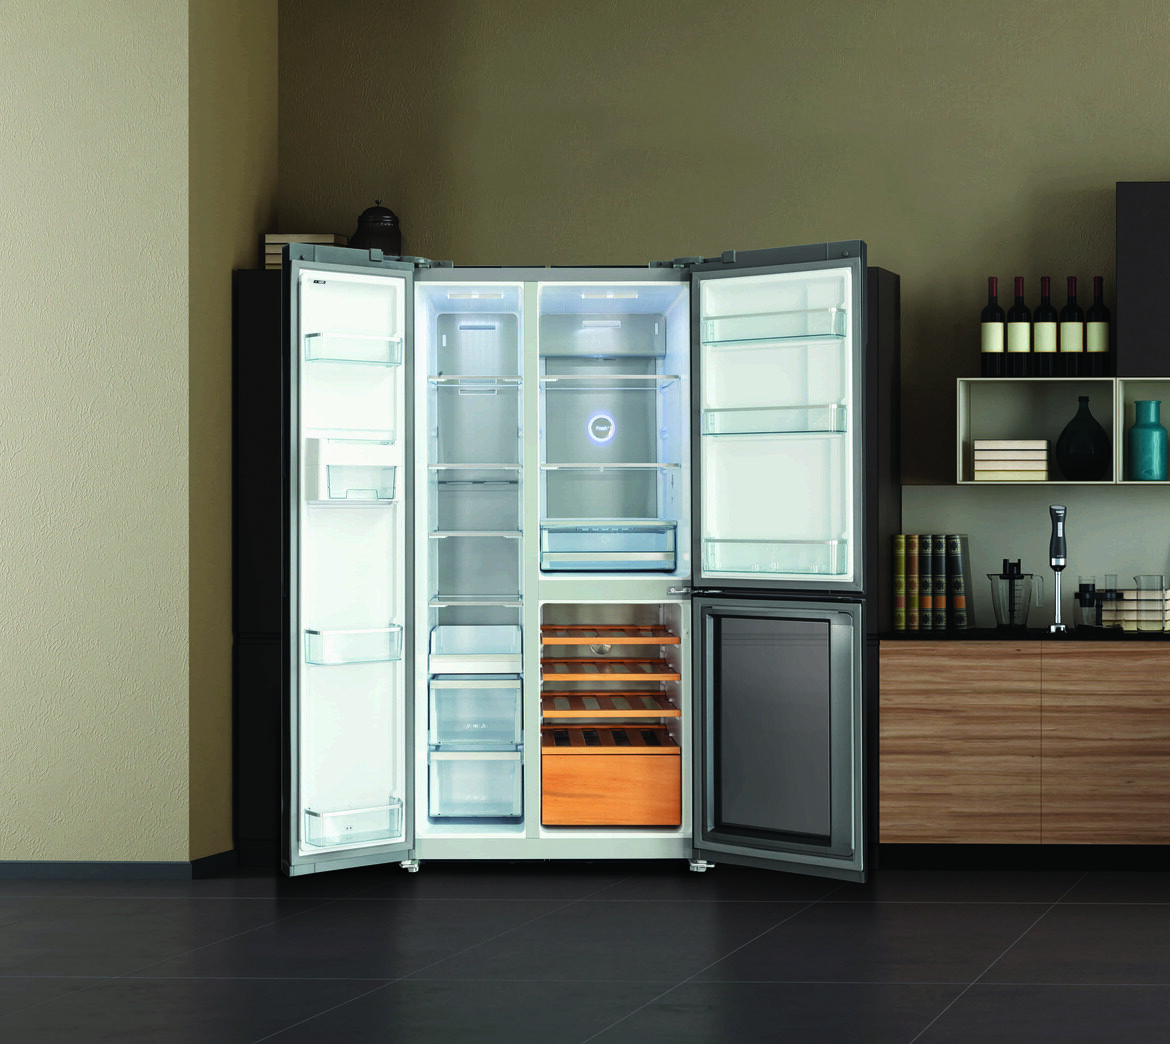 Vetro: la scelta ideale per la porta del frigorifero